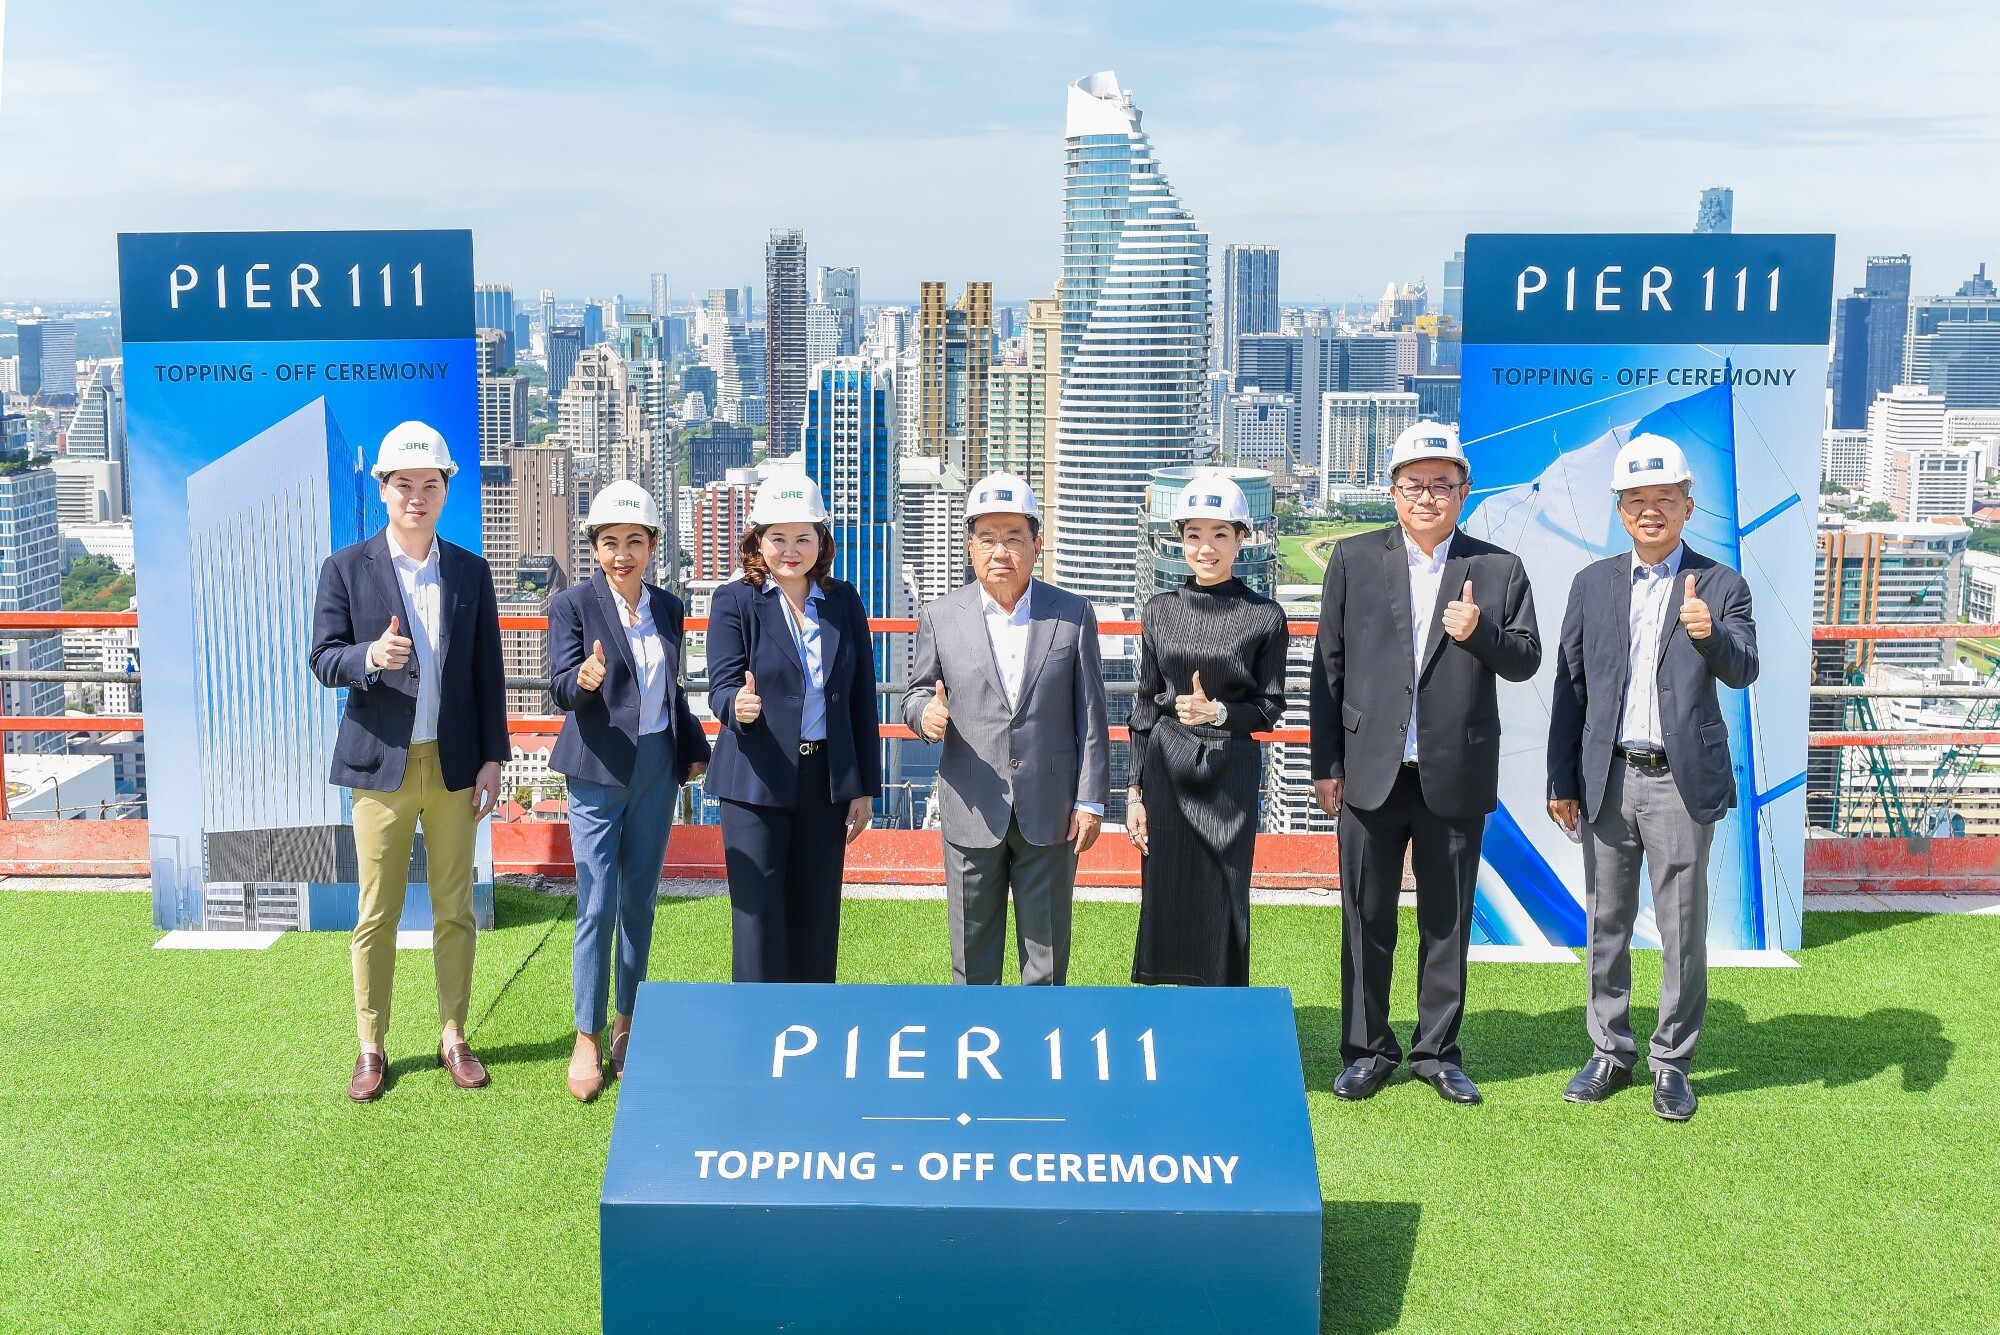 เดอะ แพลทินัม กรุ๊ป ประกาศความสำเร็จกับการก่อสร้าง อาคารสำนักงาน "Pier 111" (เพียร์ วันวันวัน) และการเทคอนกรีตปิดงานโครงสร้างอาคาร